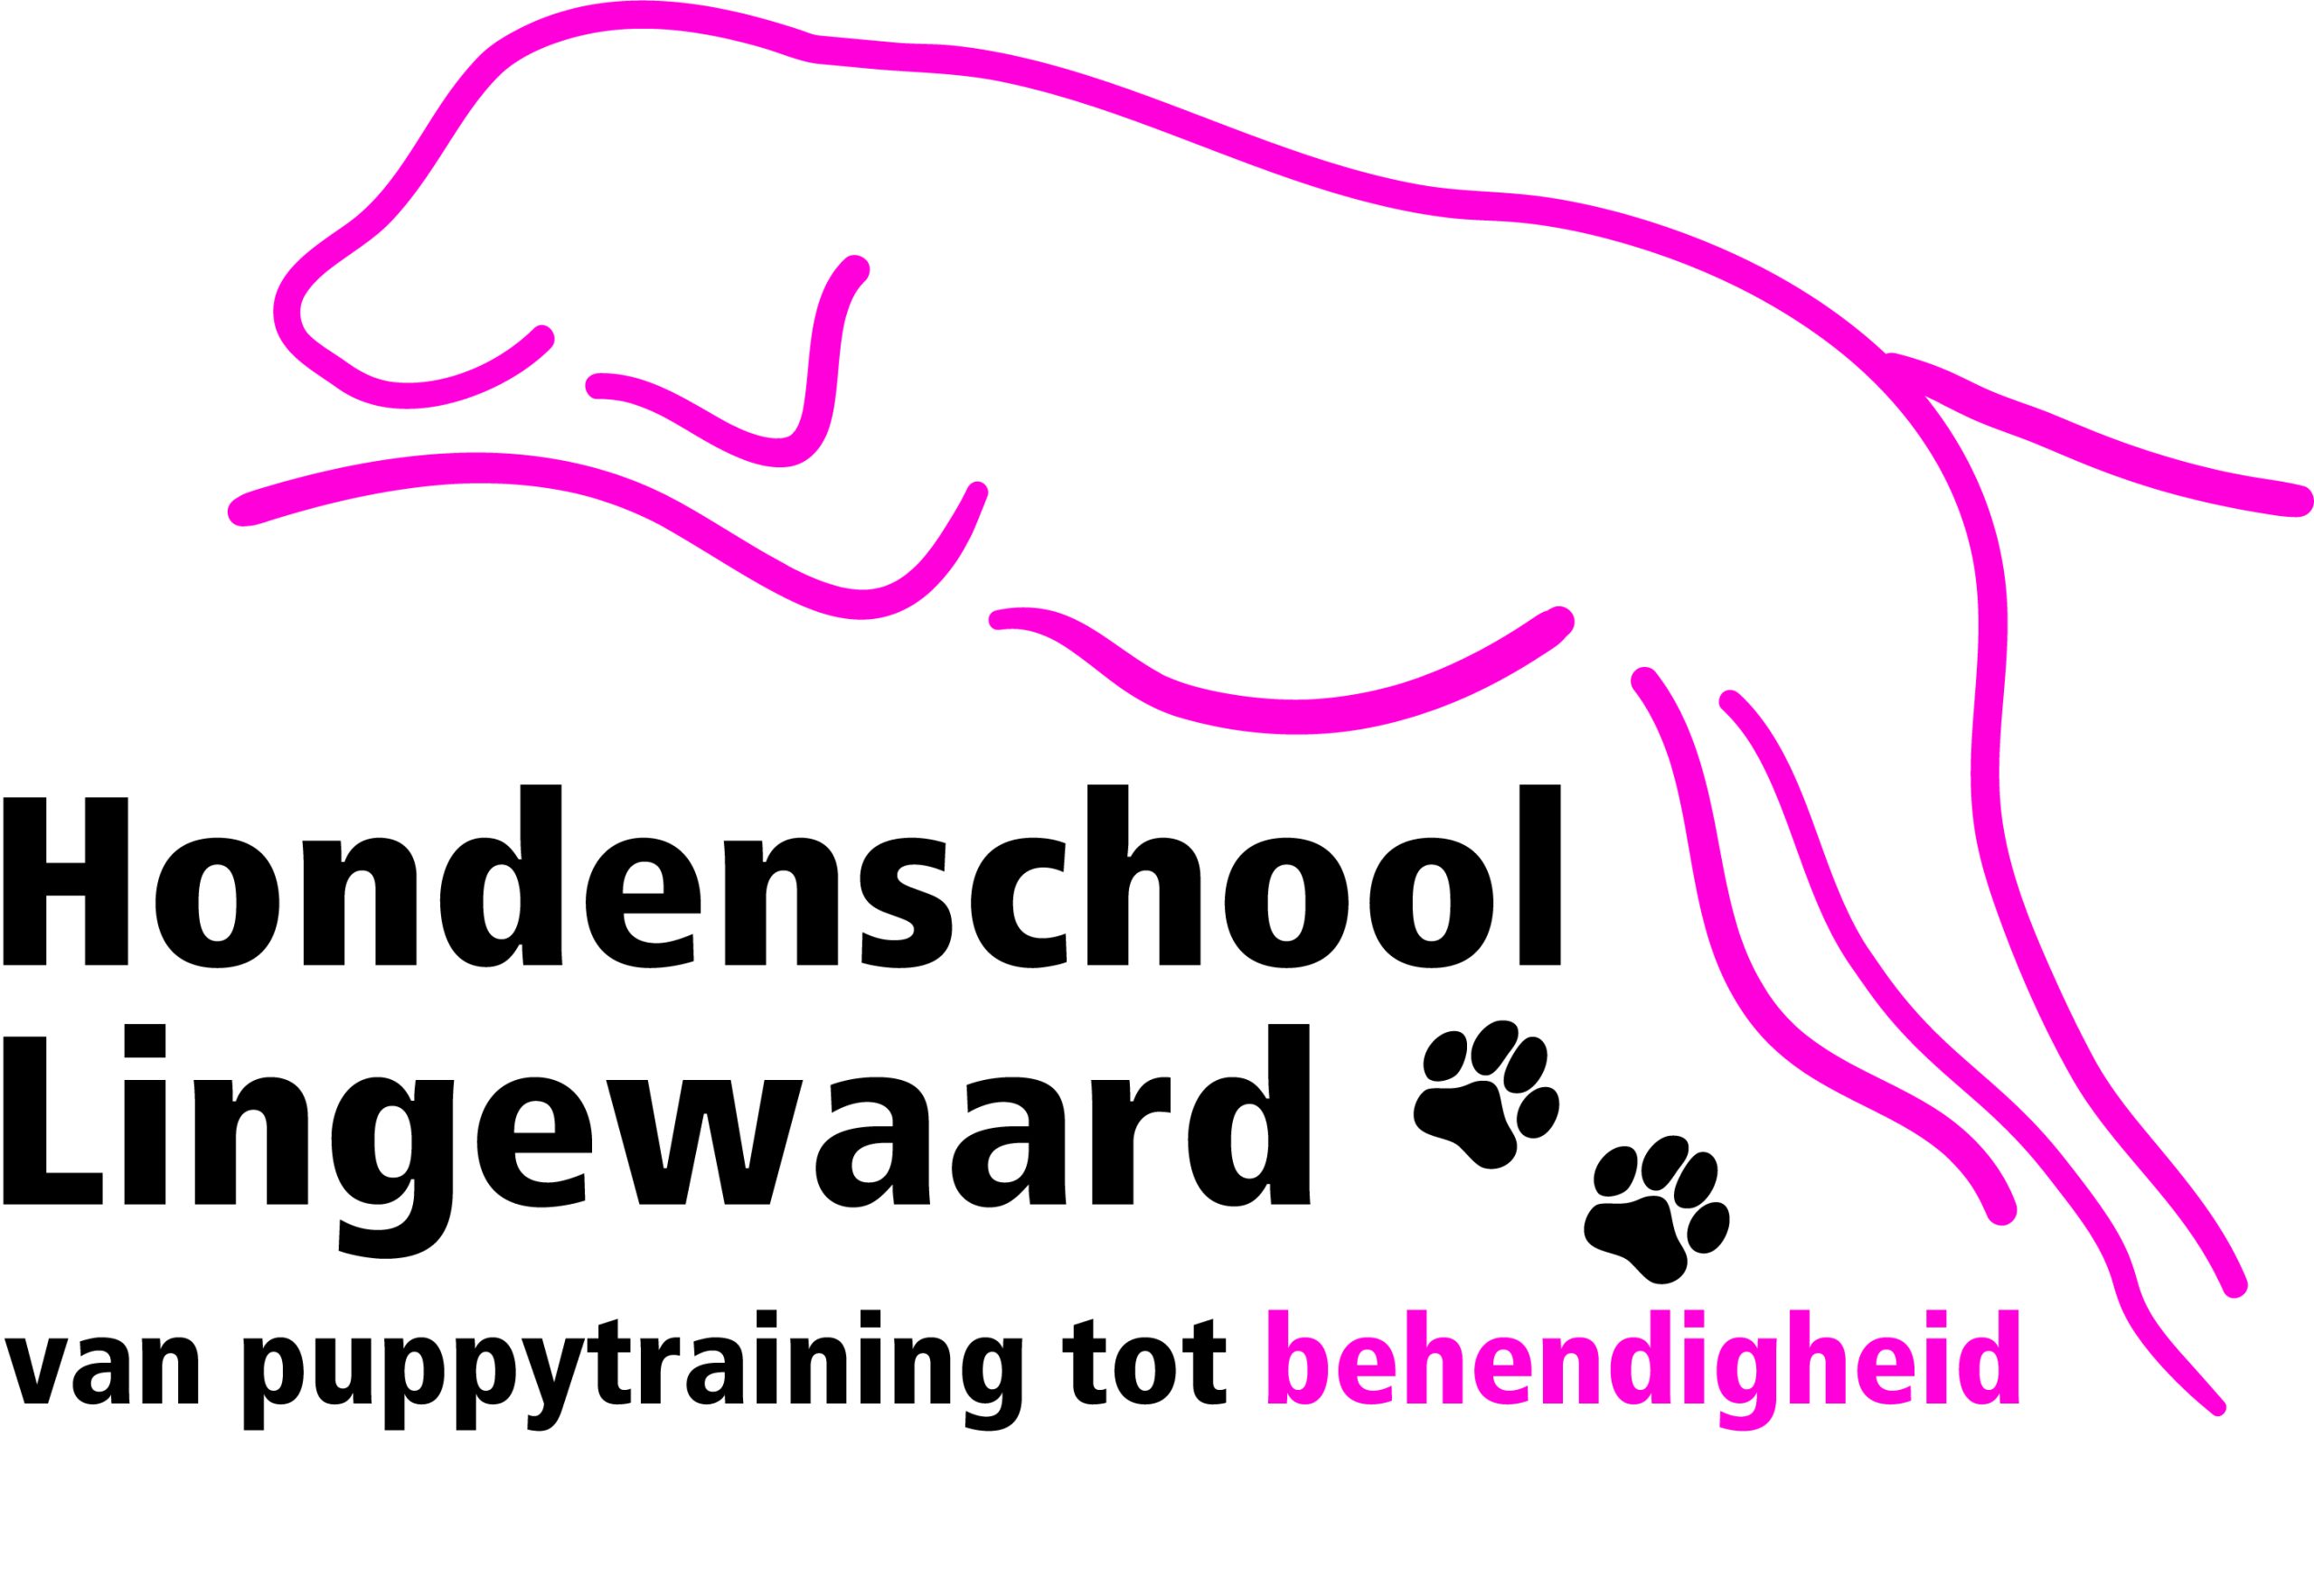 Hondenschool-Lingewaard-scaled.jpg